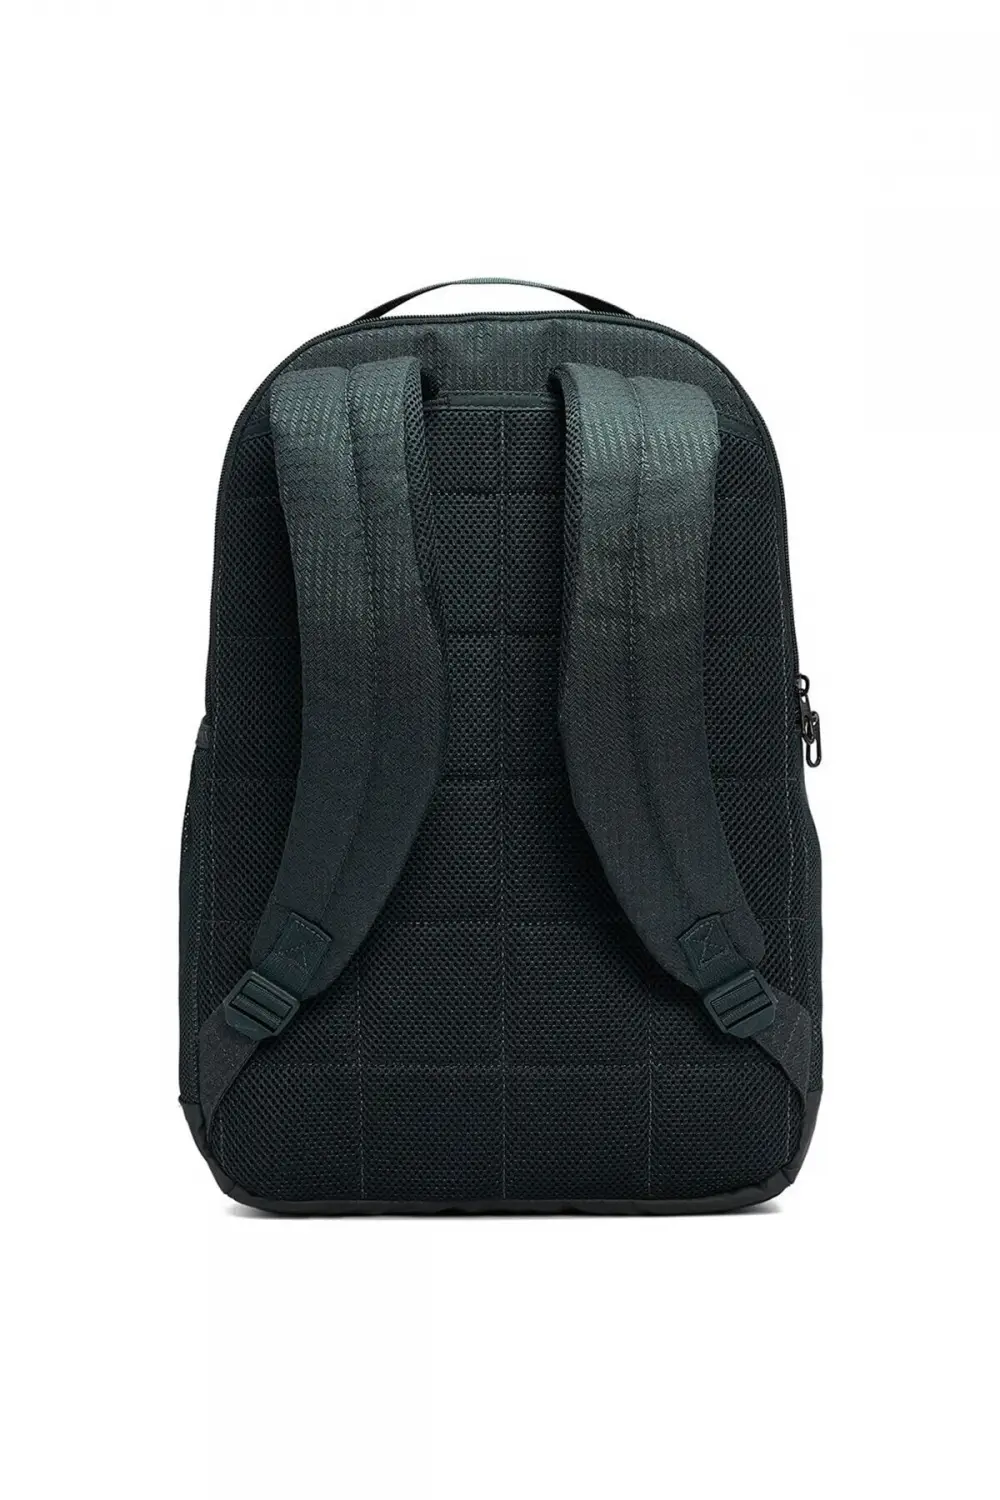 Nike Brasilia 9.0 M Backpack Yosun Rengi Unisex Sırt Çantası - CU1026-364  Fiyatı, Özellikleri ve Yorumları